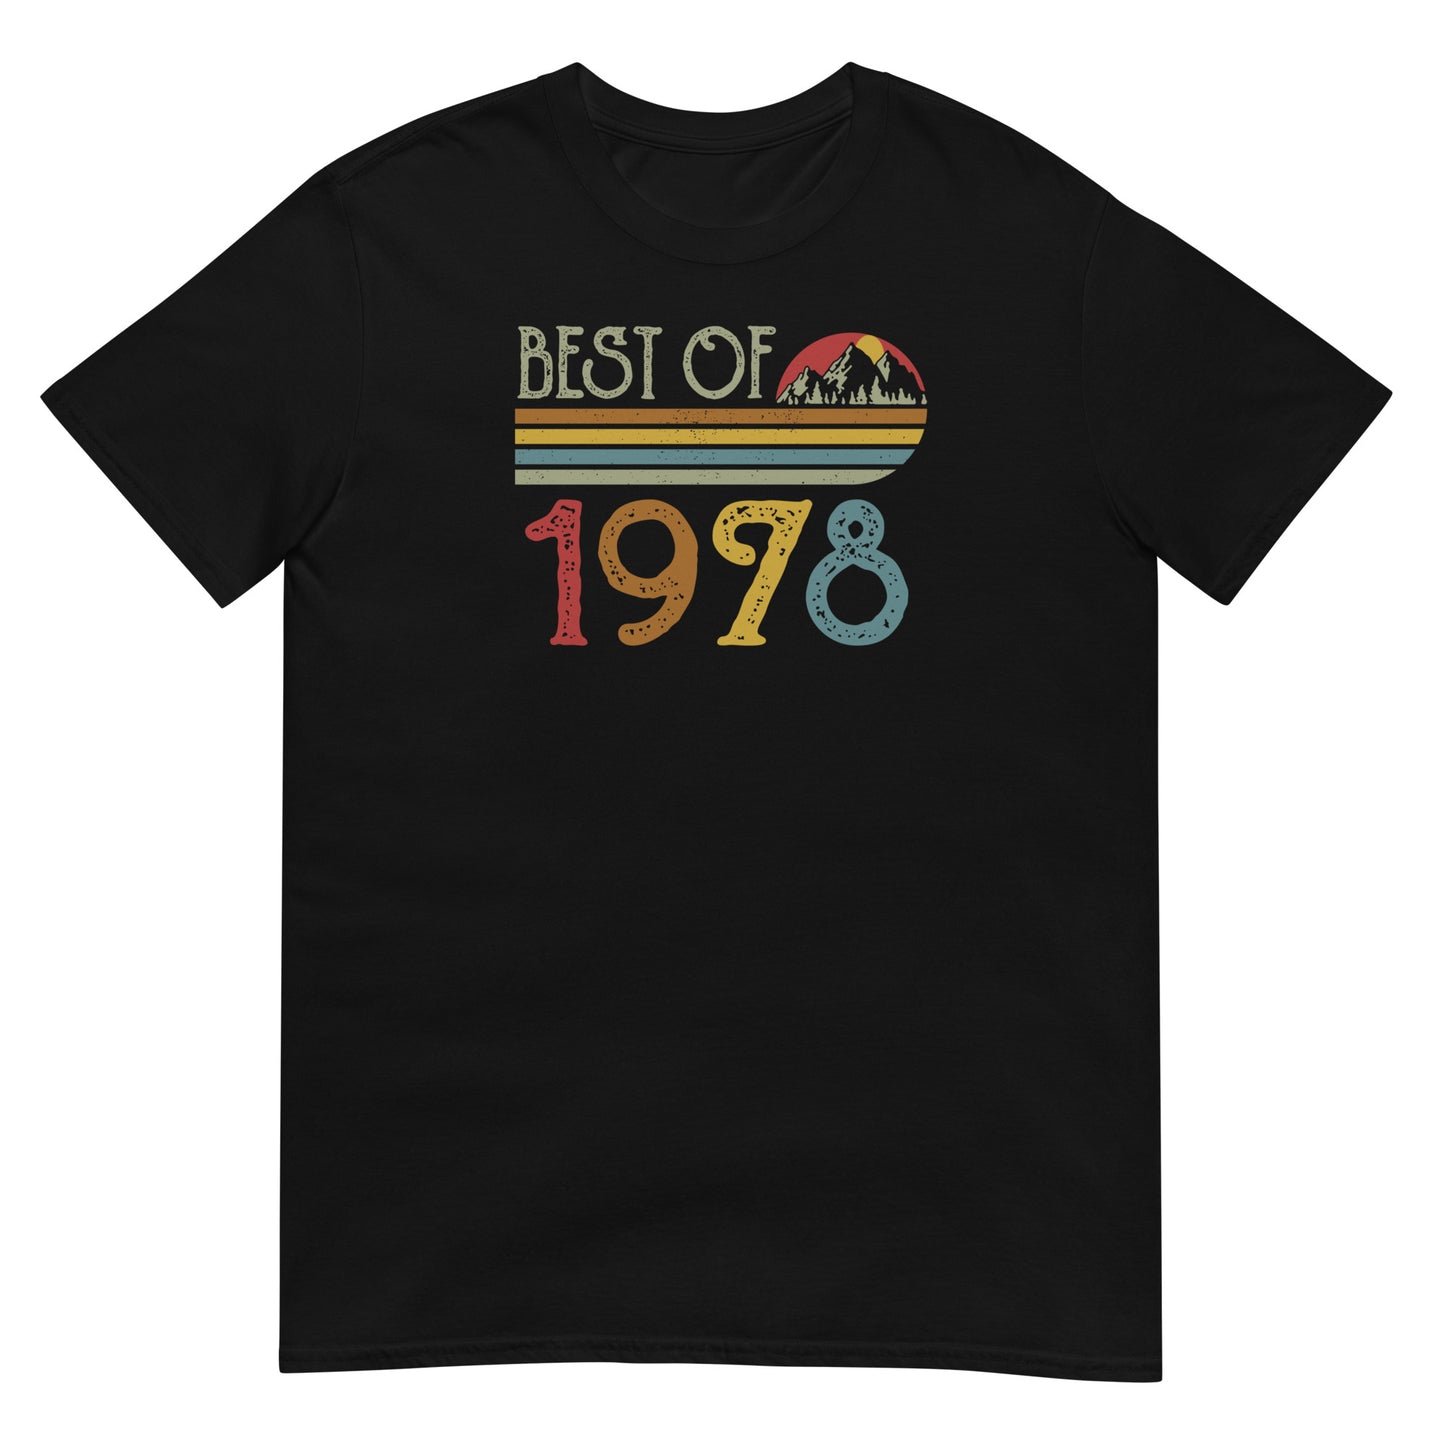 Camiseta Best Of 1978 - Cumpleaños